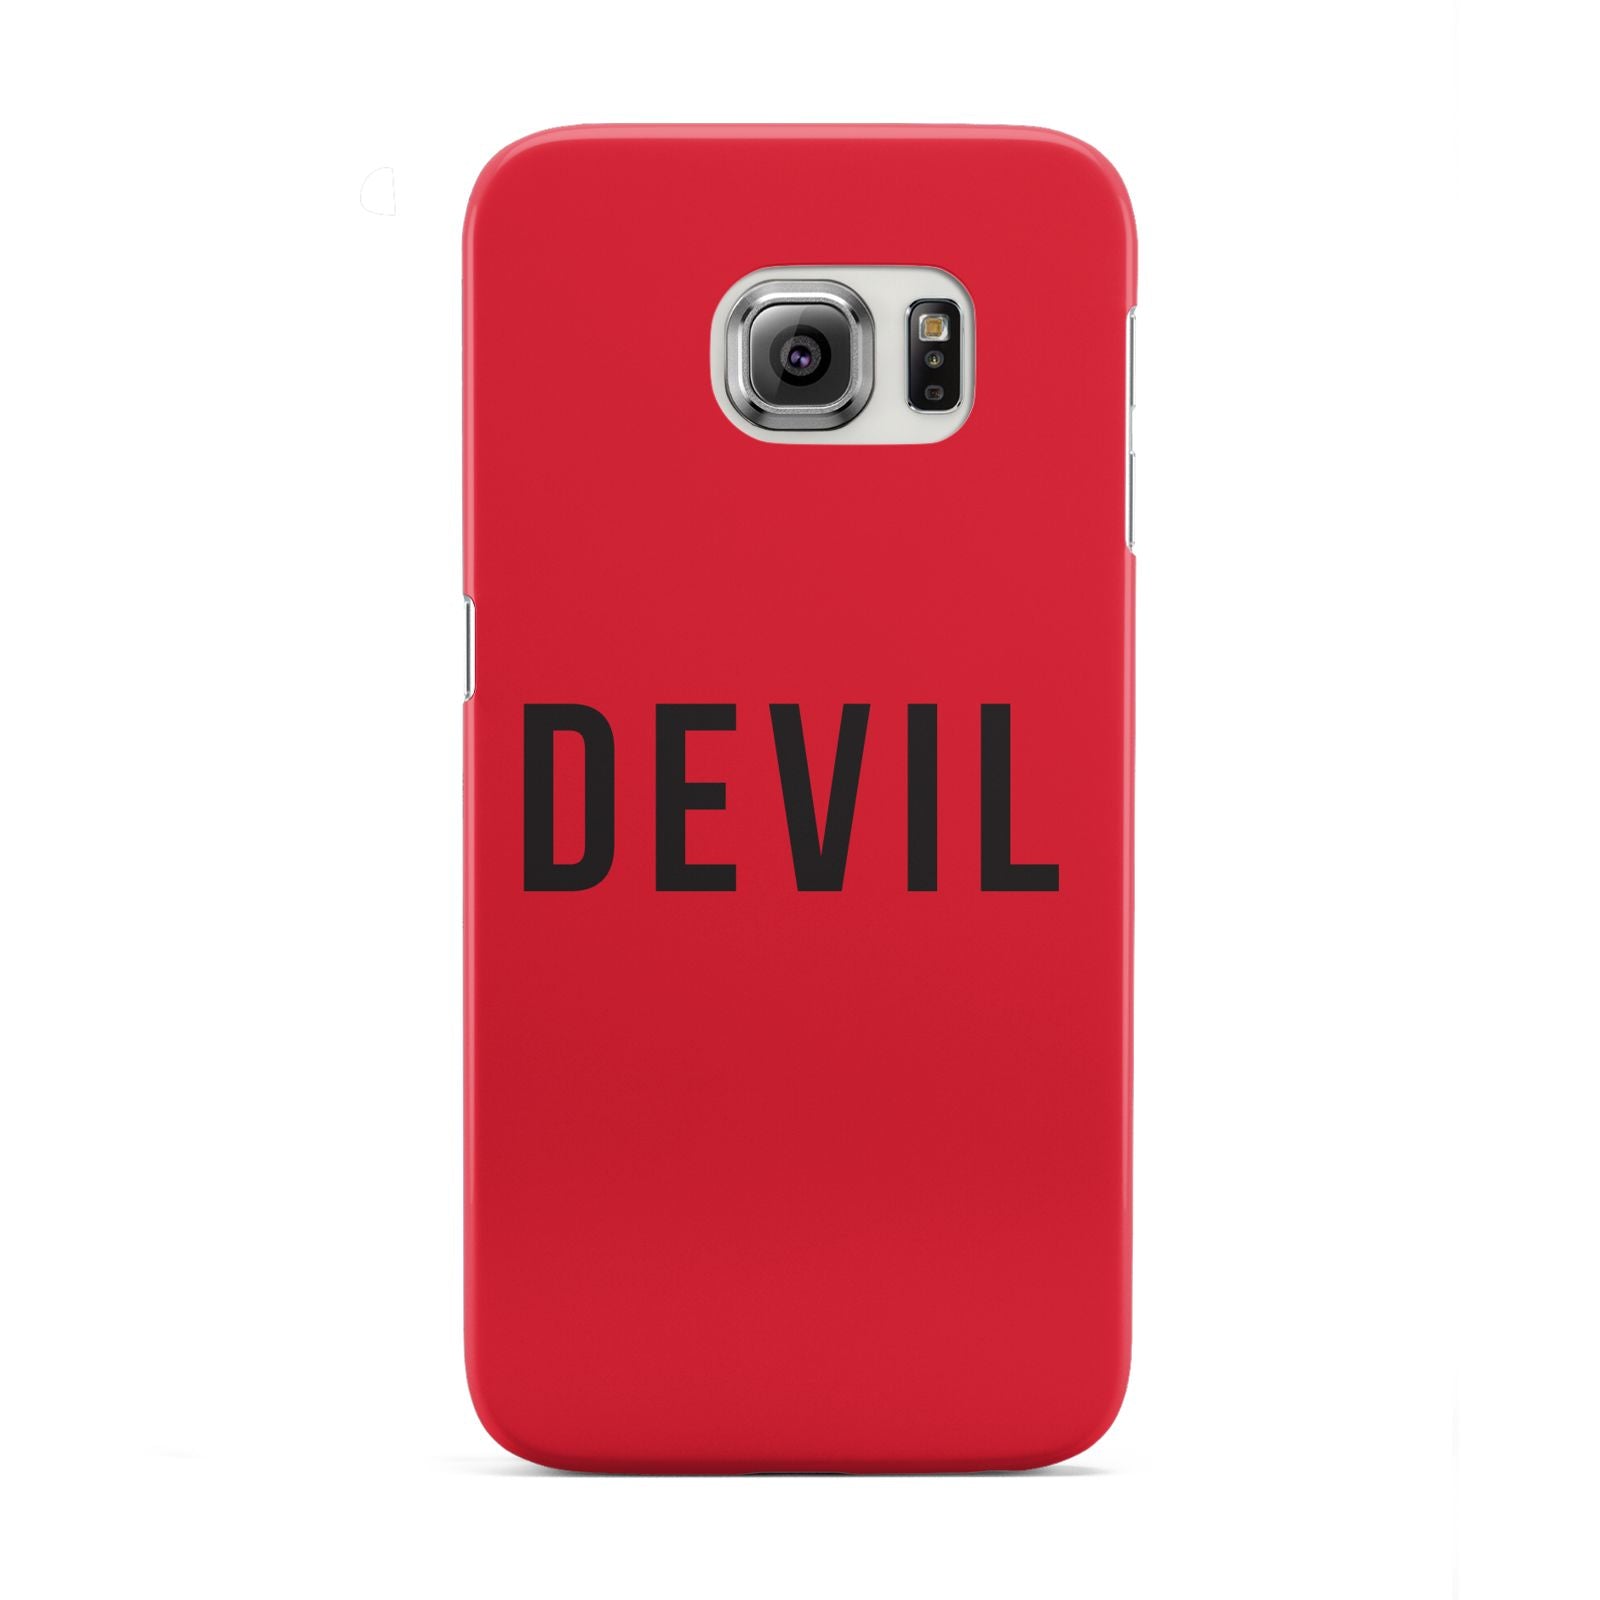 Halloween Red Devil Samsung Galaxy S6 Edge Case